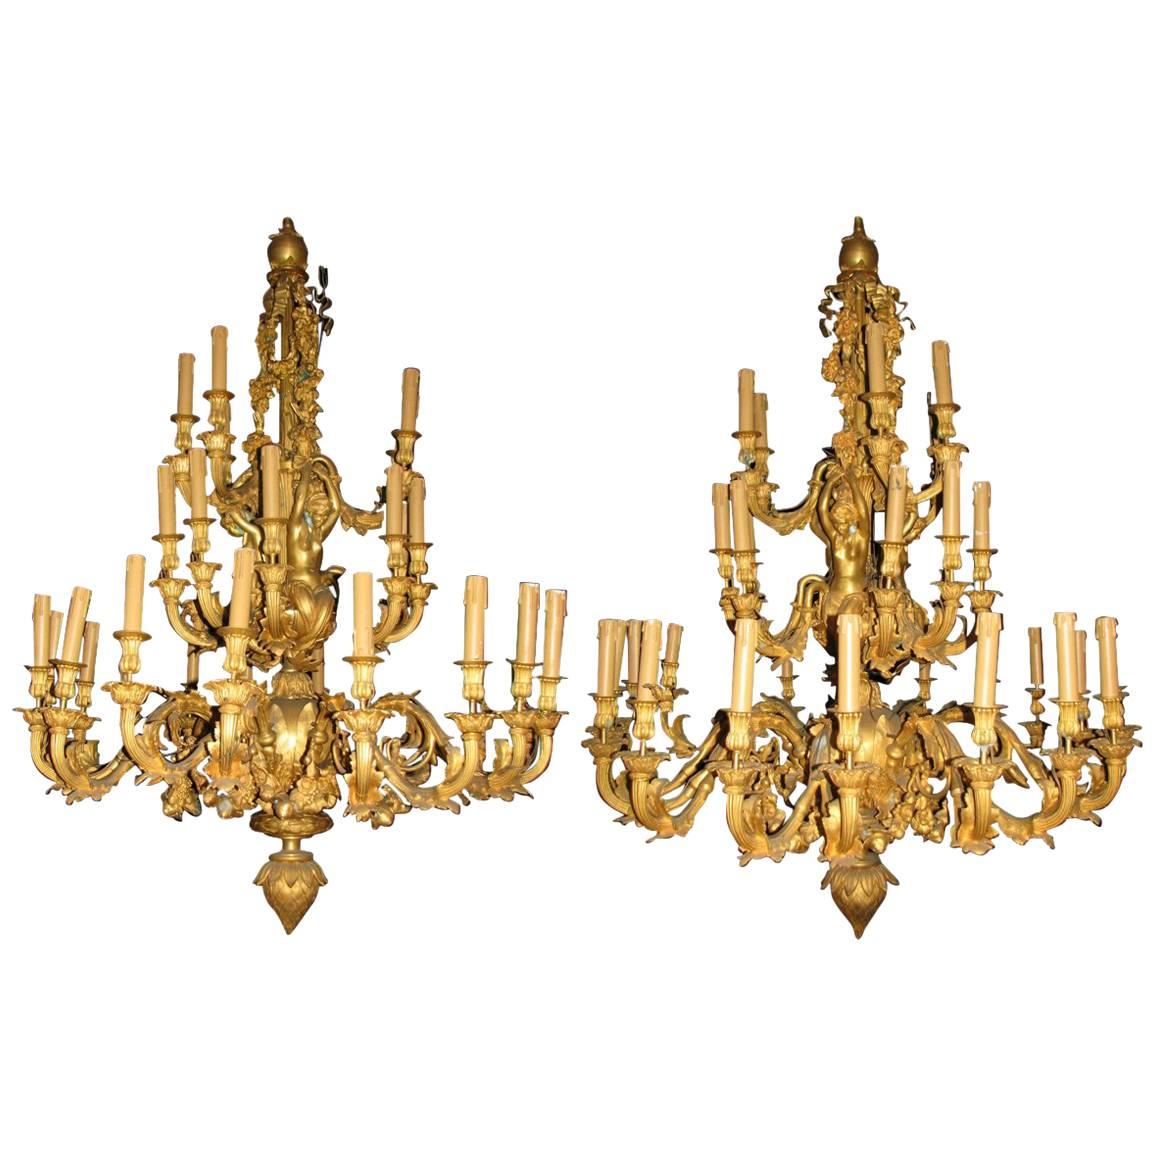 Paar dreiunddreißig figurale Ormolu-Kronleuchter im Louis-XV-Stil mit dreiunddreißig Lichtern